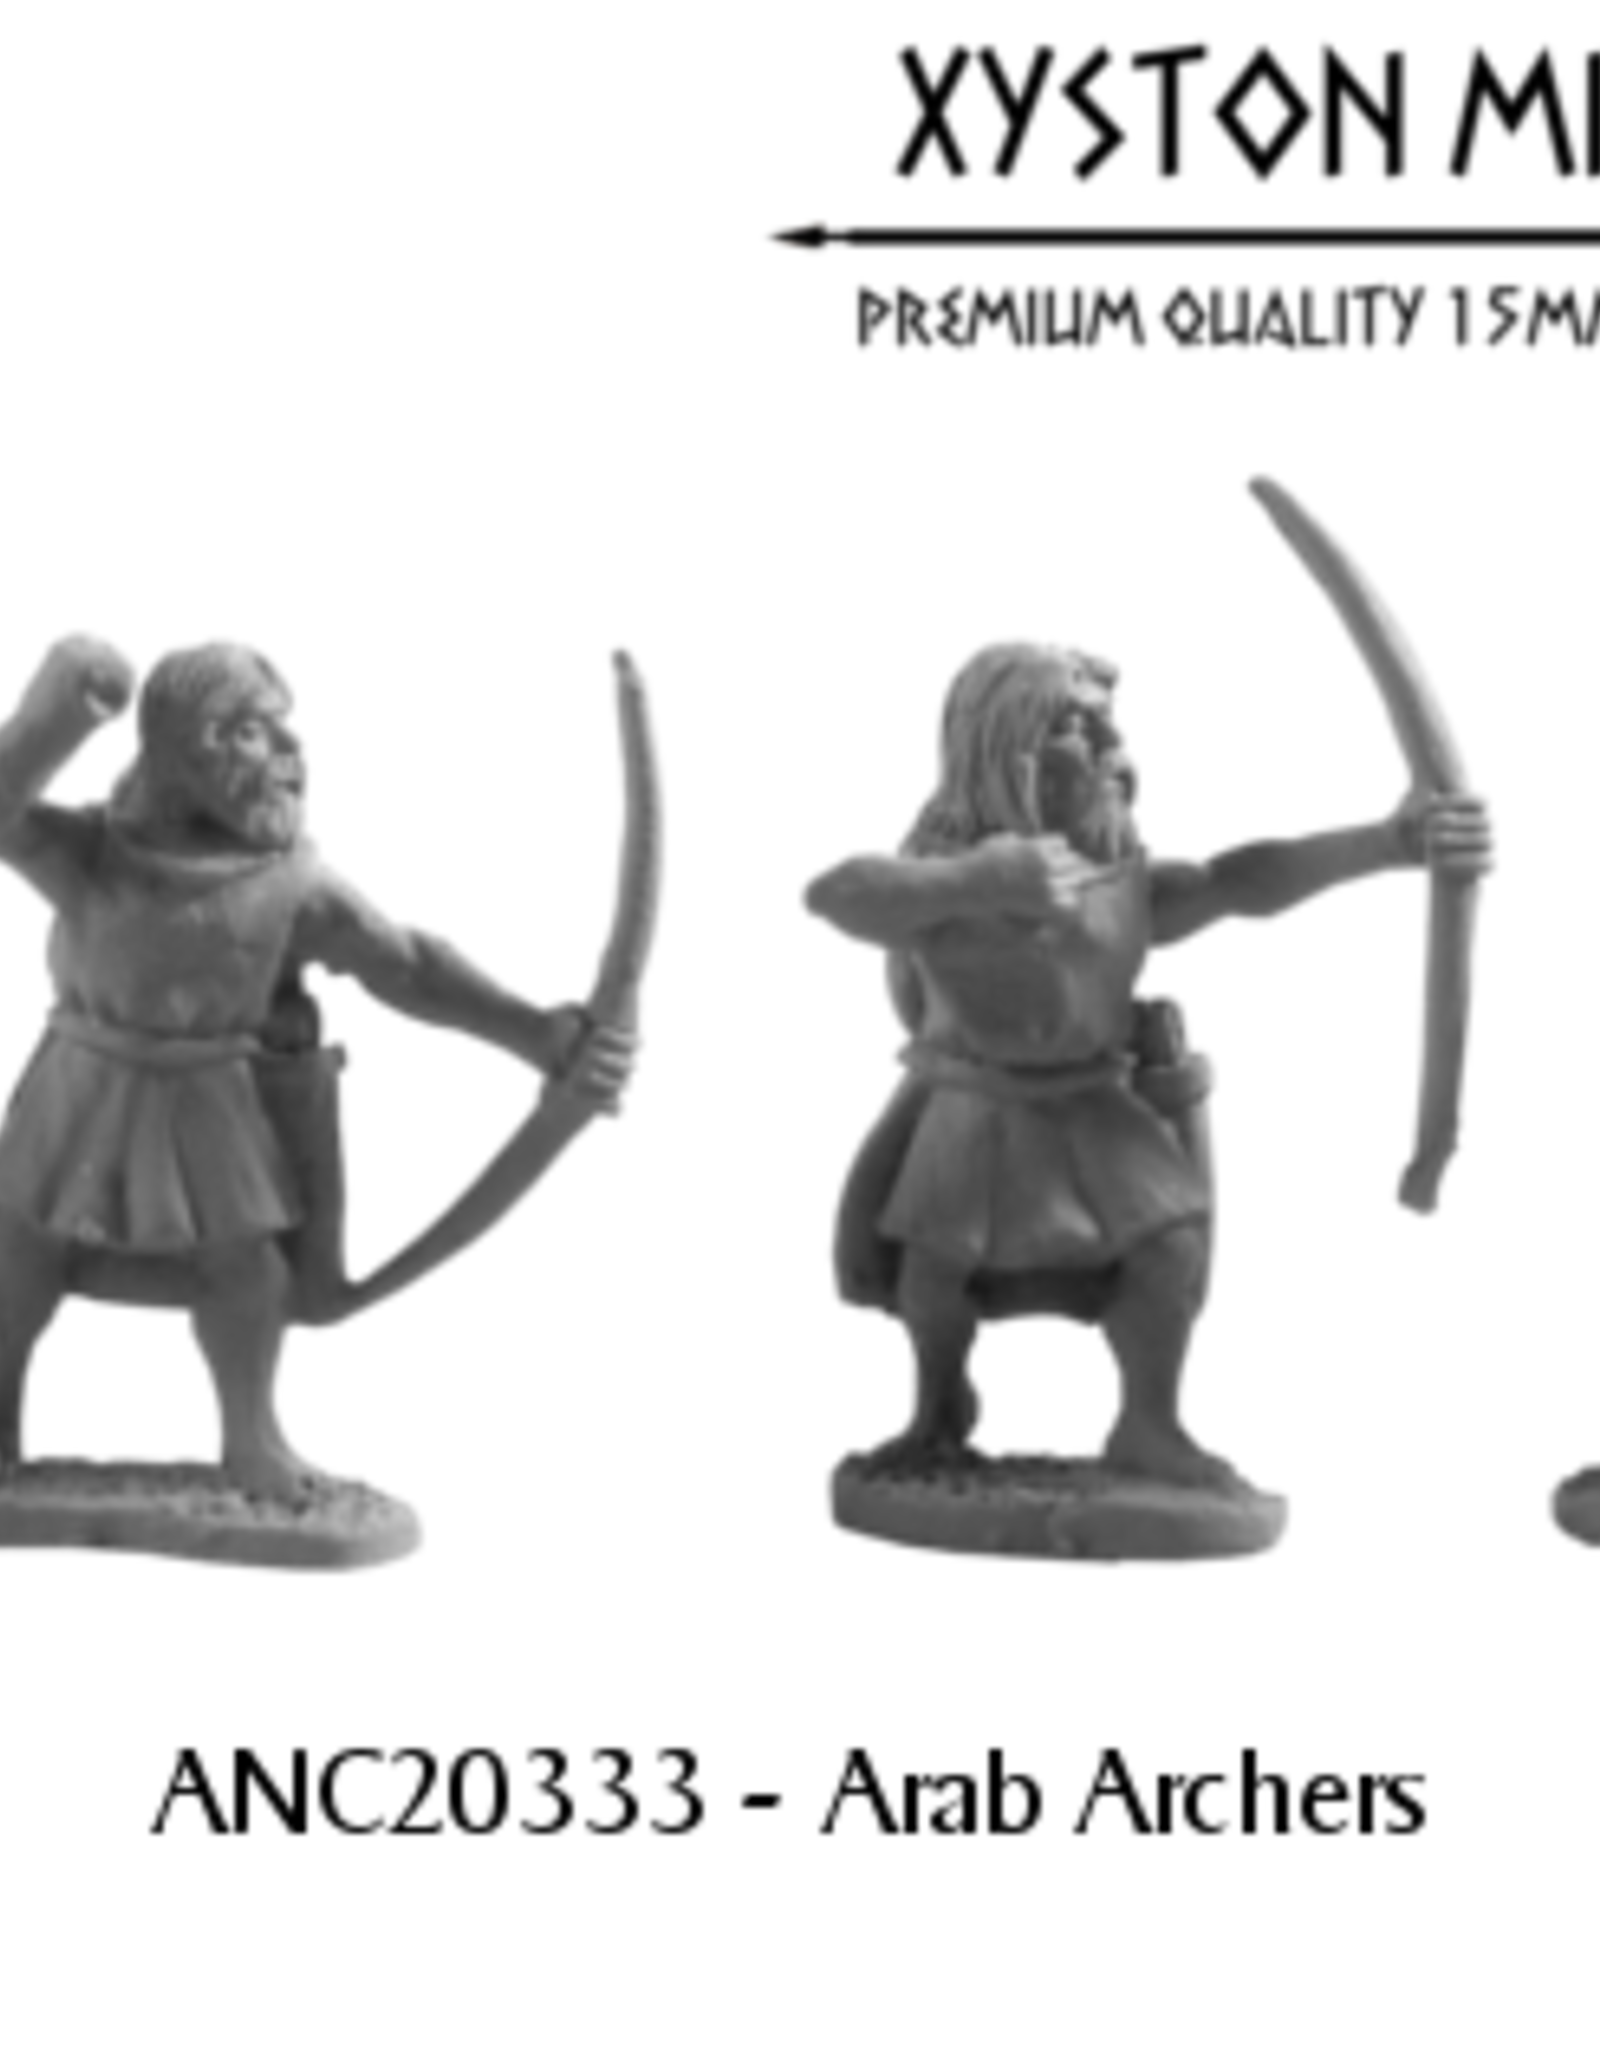 Xyston ANC20333 - Arab Archers